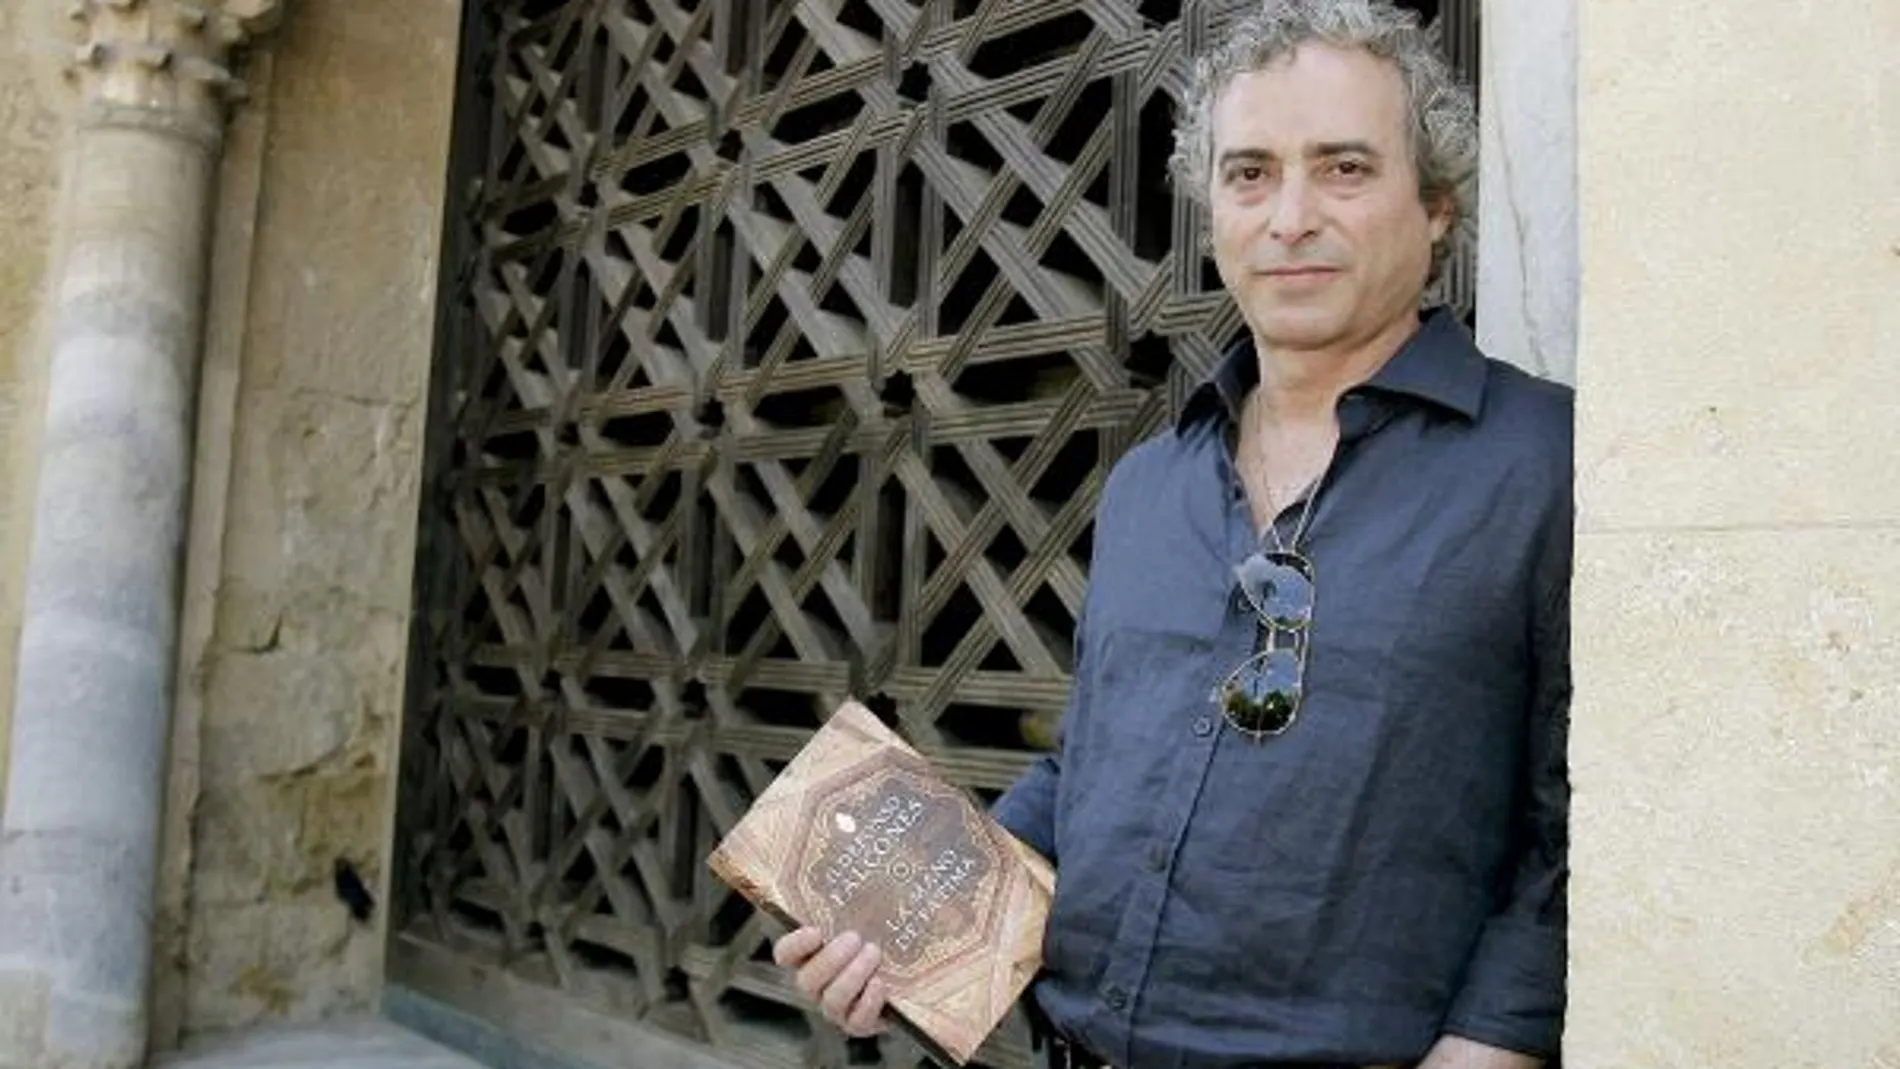 El escritor Ildefonso Falcones posa junto a una de las puertas de la Mezquita de Córdoba, ciudad en la que ha presentado su segunda novela, "La mano de Fátima"